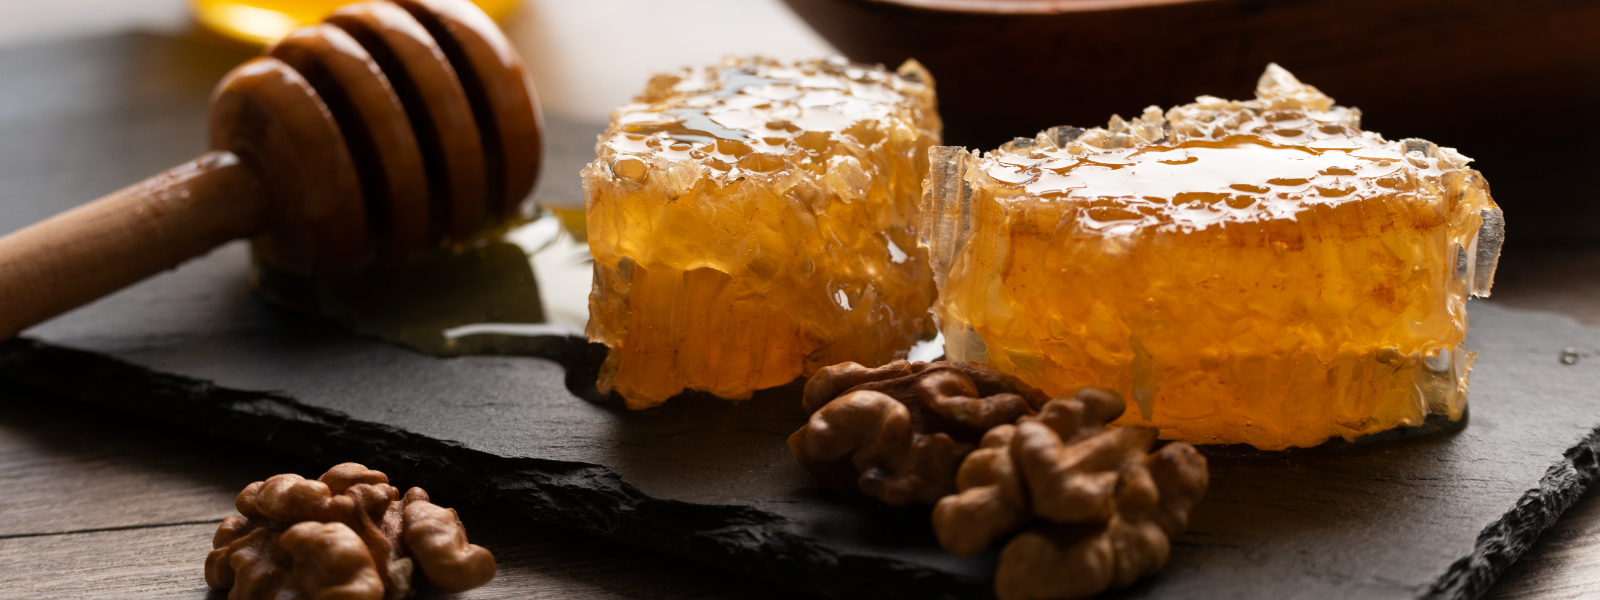 QMESI OÜ - beekeeping, Beekeeping products, honey packaging, natural honey, estonian honey, sweetener, honey in a glass j...